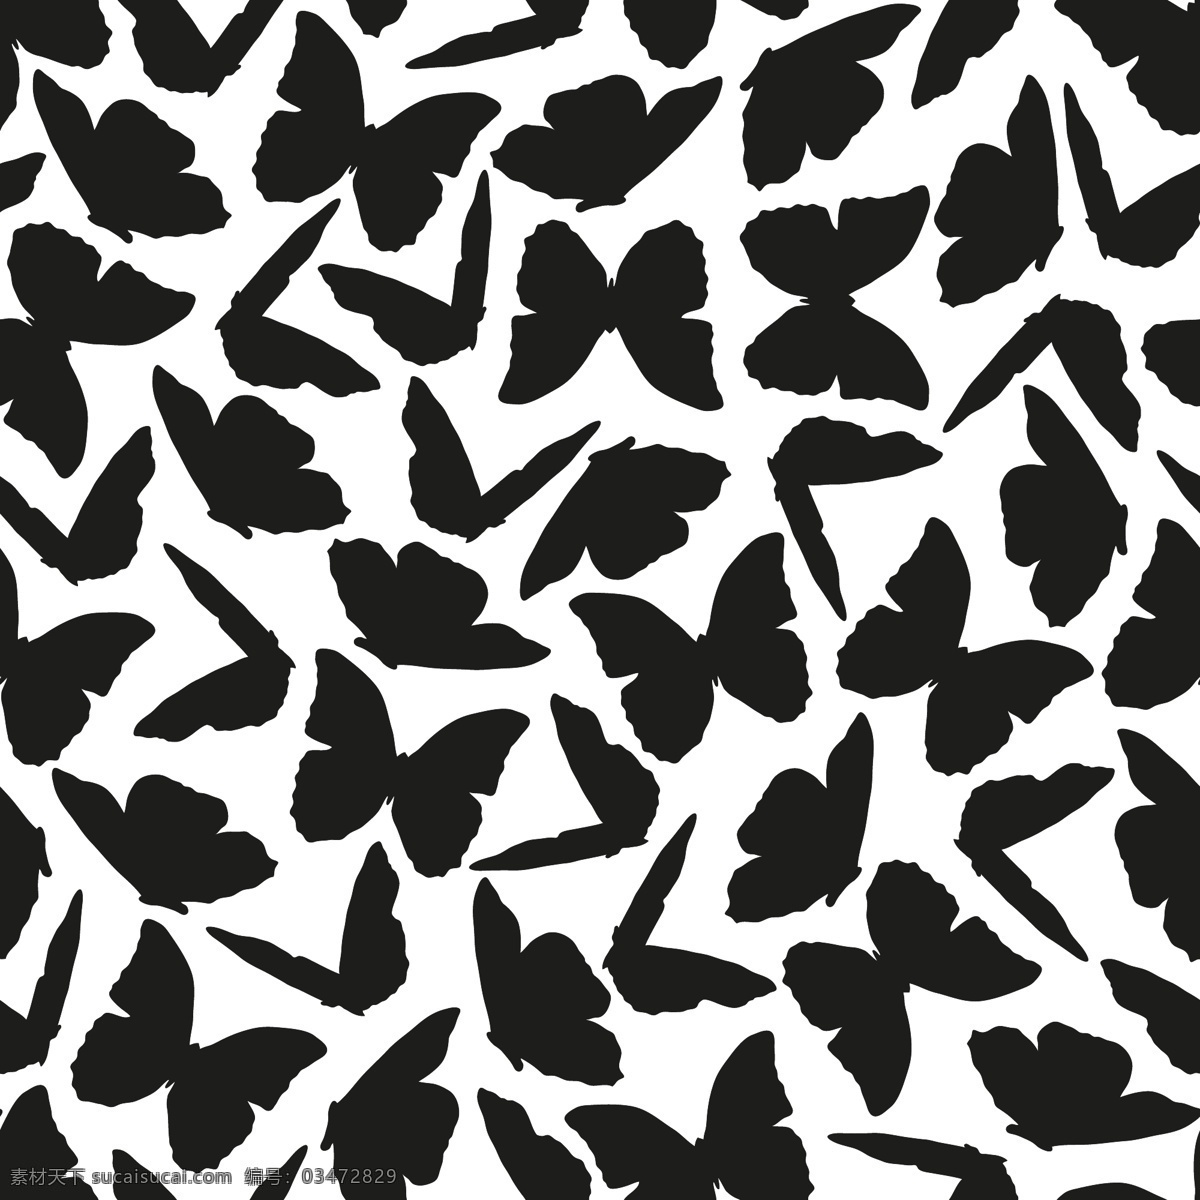 黑白 动物 水彩 diy 纹理 图案 蝴蝶 简约 花纹 卡通 设计素材 排列 矢量 平面素材